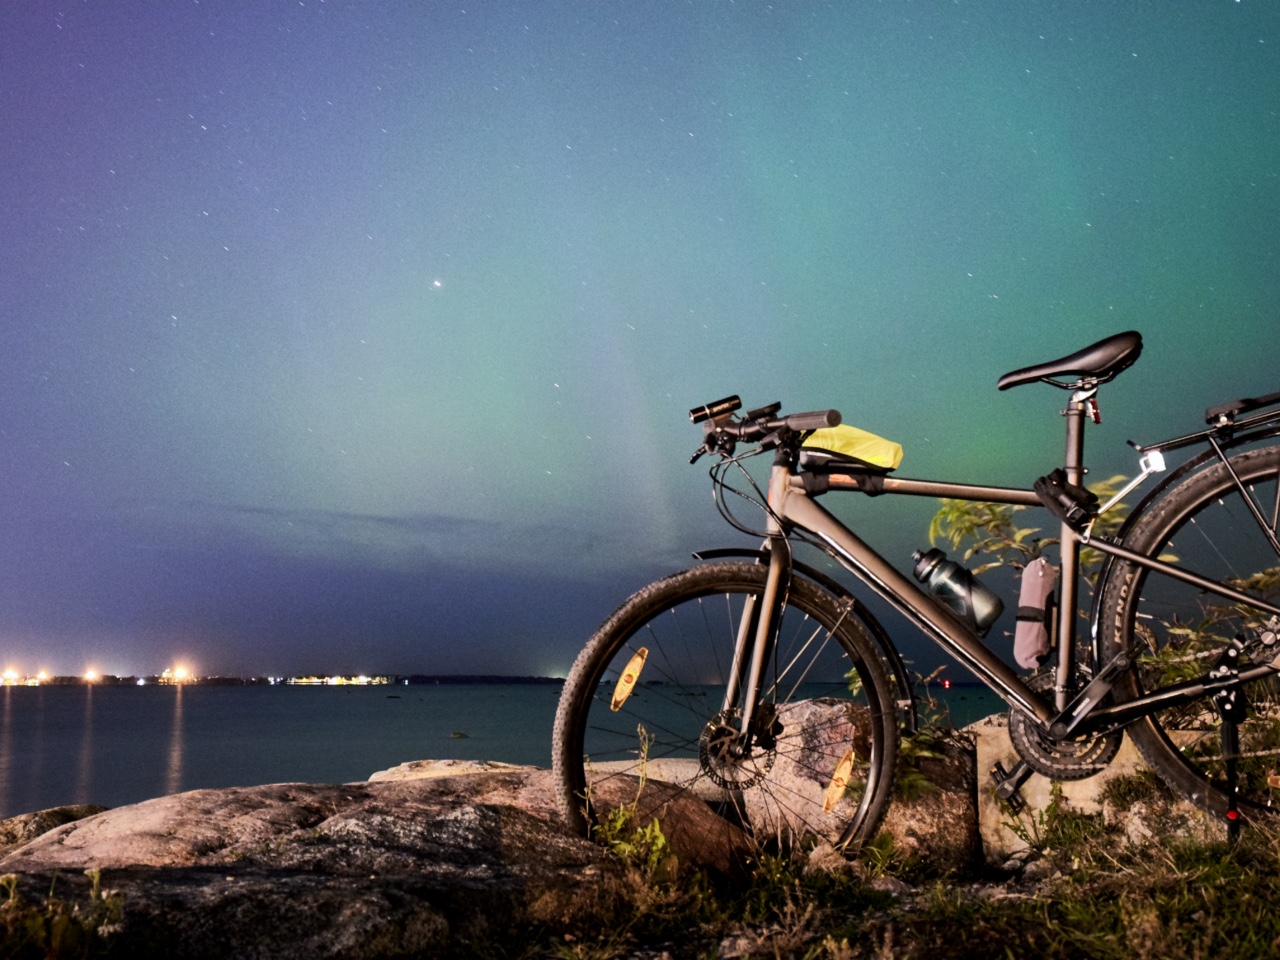 Bersepeda ke pantai Pirita untuk melihat Aurora Borealis